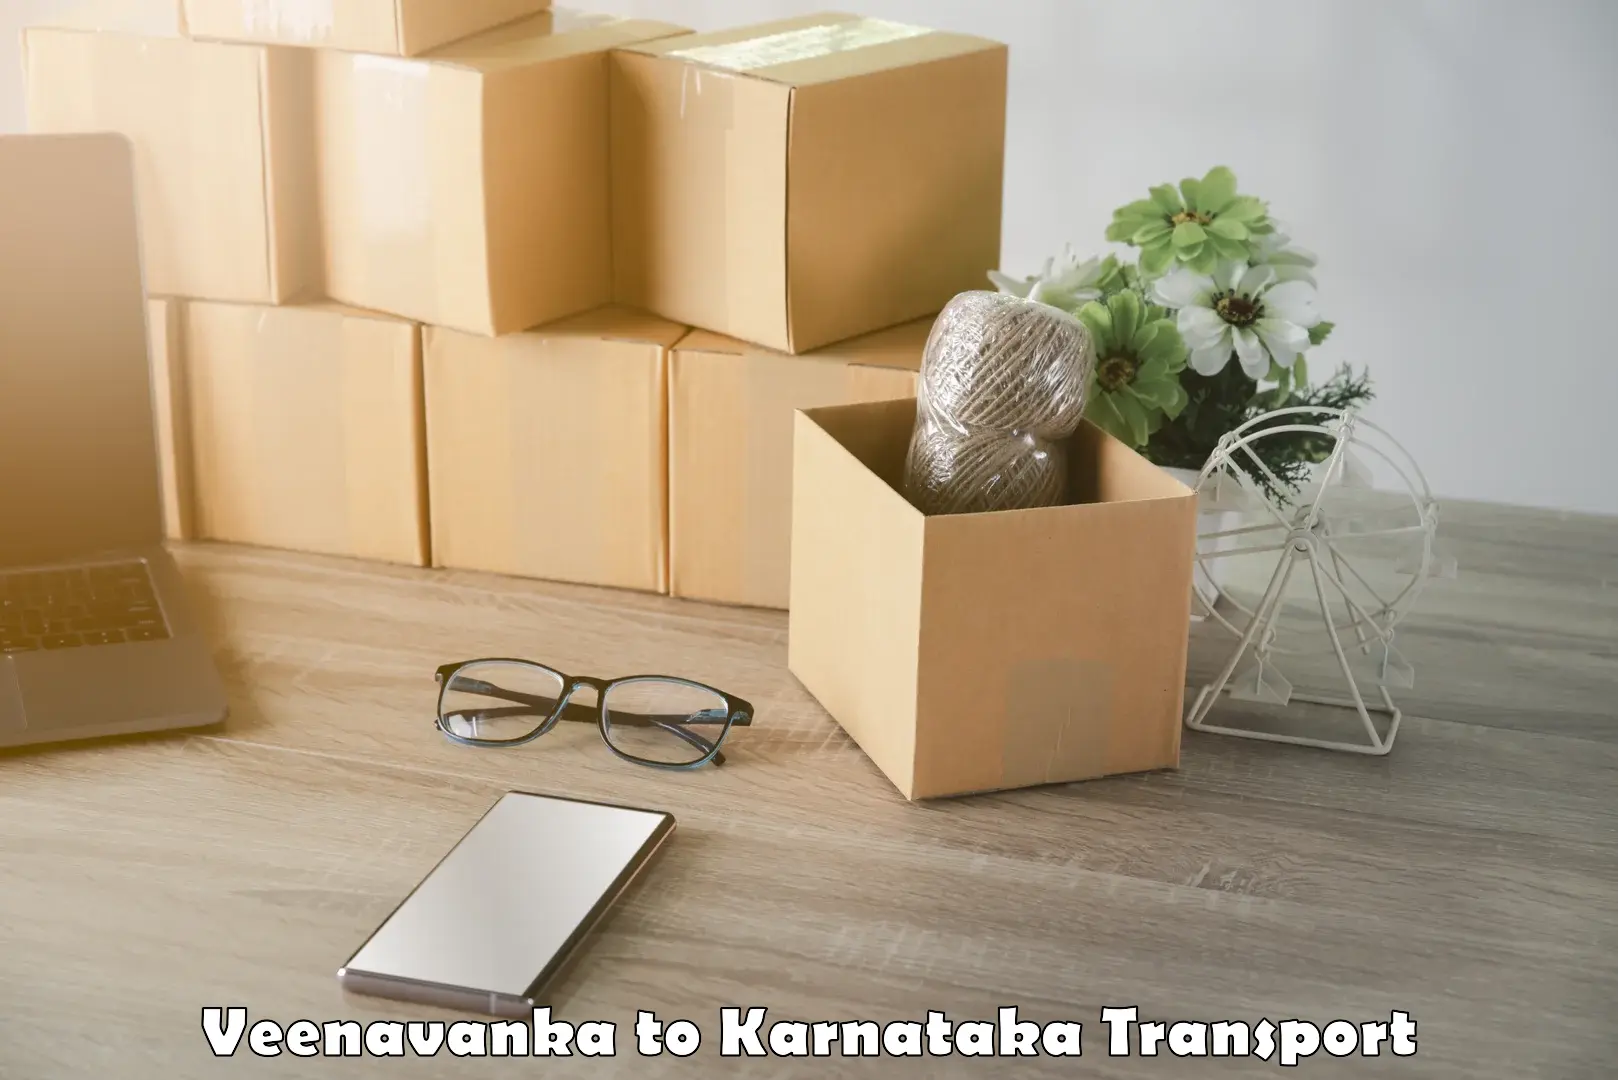 Furniture transport service Veenavanka to NIT Srinivasanagar